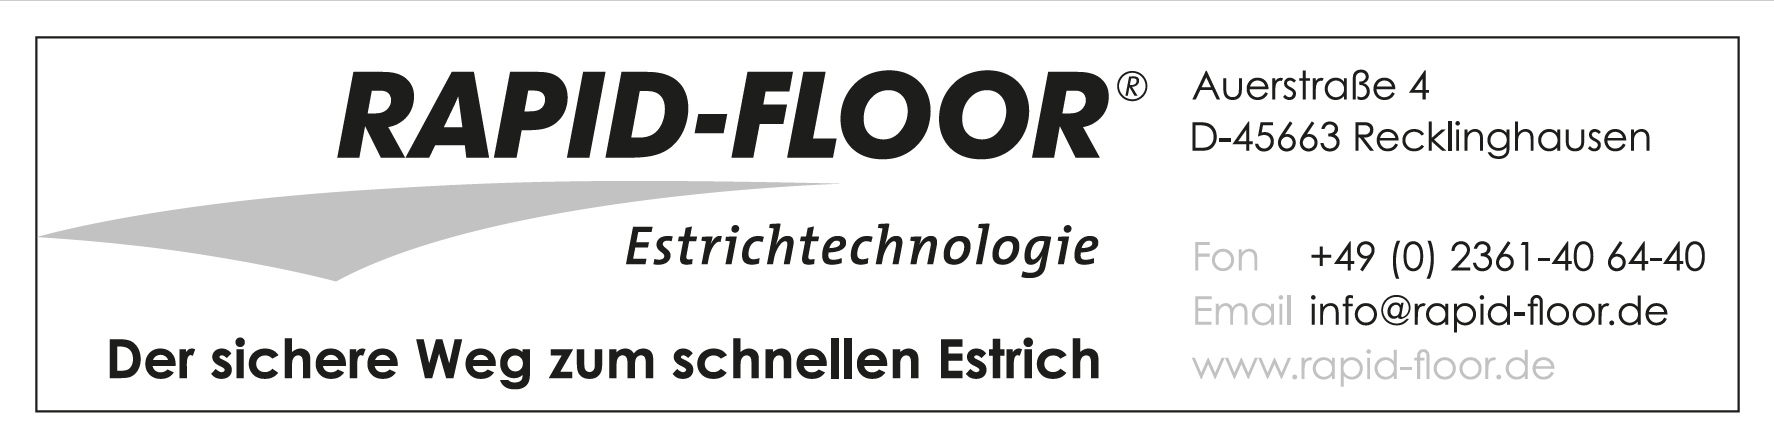 RAPID-FLOOR Estrichtechnologie GmbH